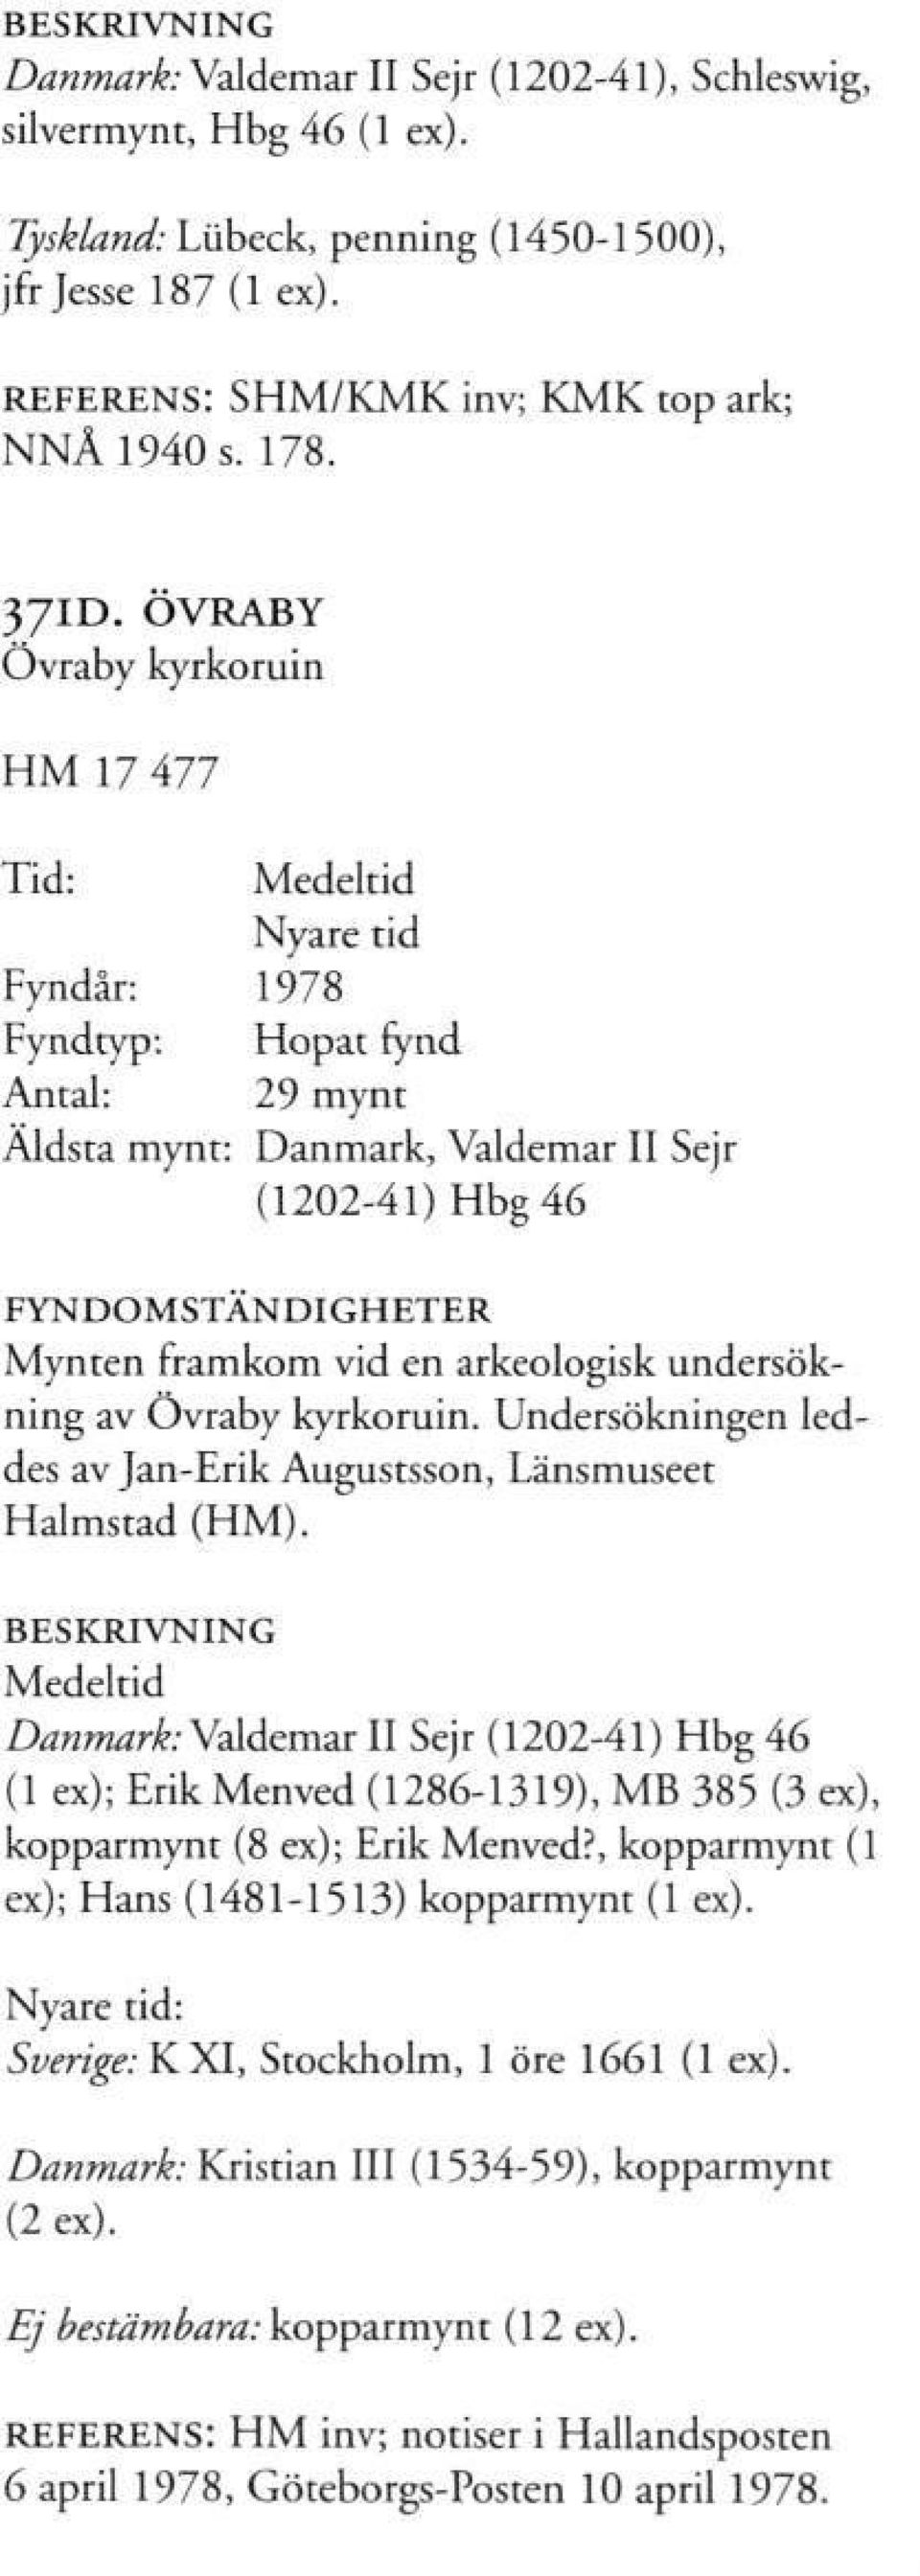 Undersökningen leddes av Jan-Erik Augustsson, Länsmuseet Halmstad (HM).